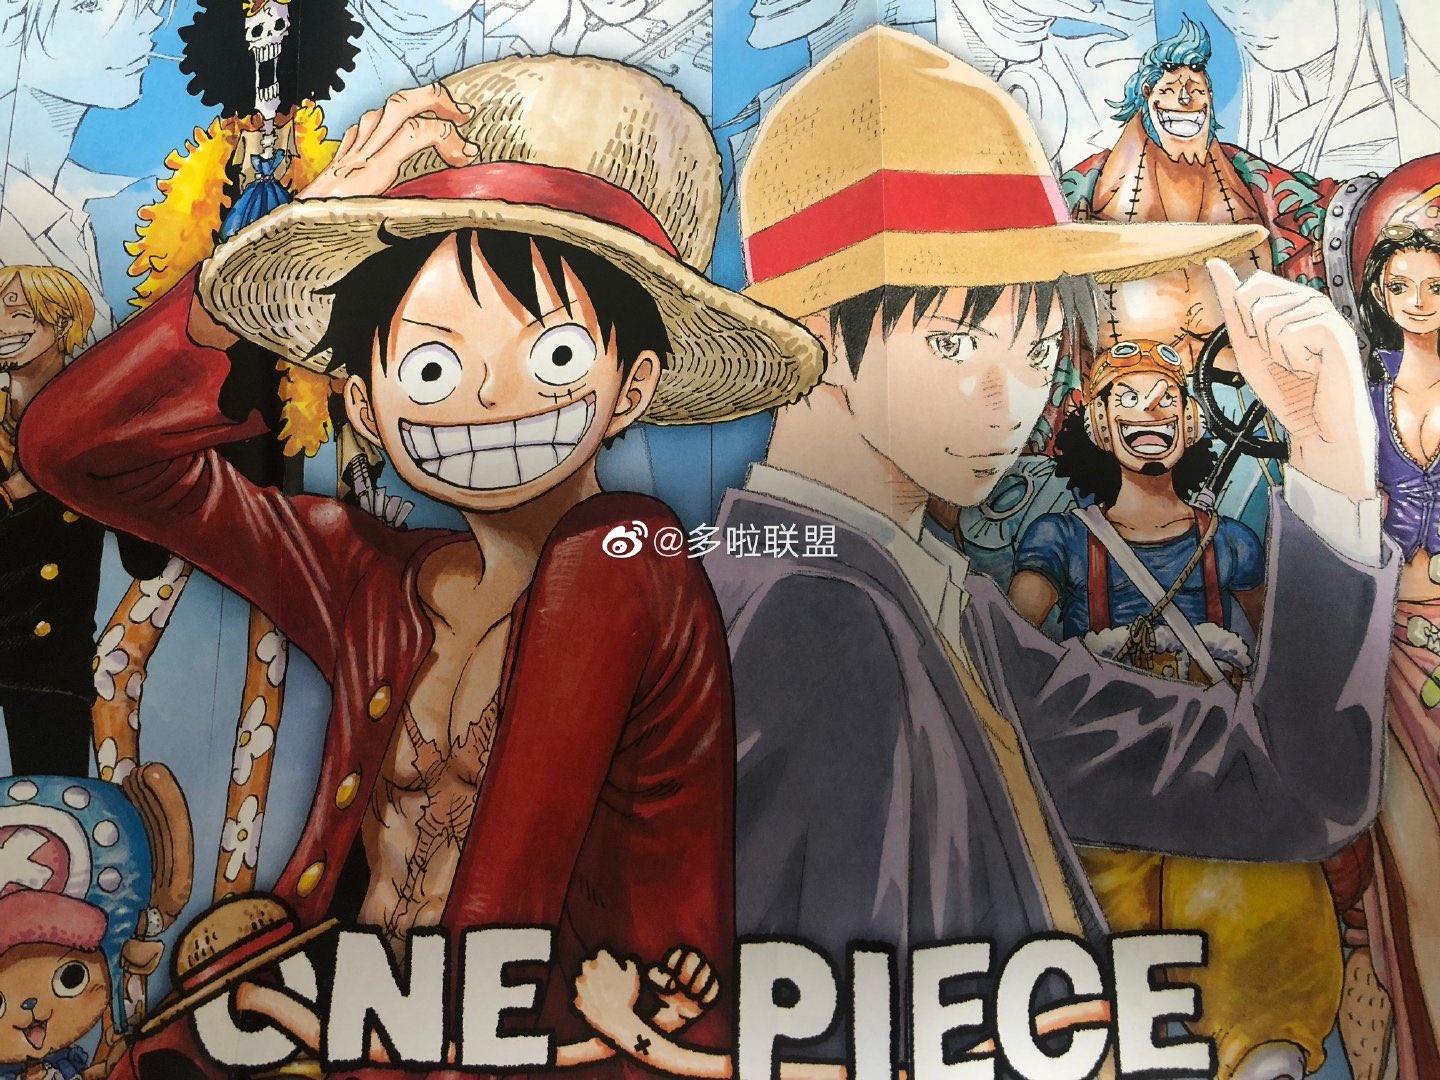 Spoiler One Piece Chapter 972 Spoiler Summaries And Images Worstgen